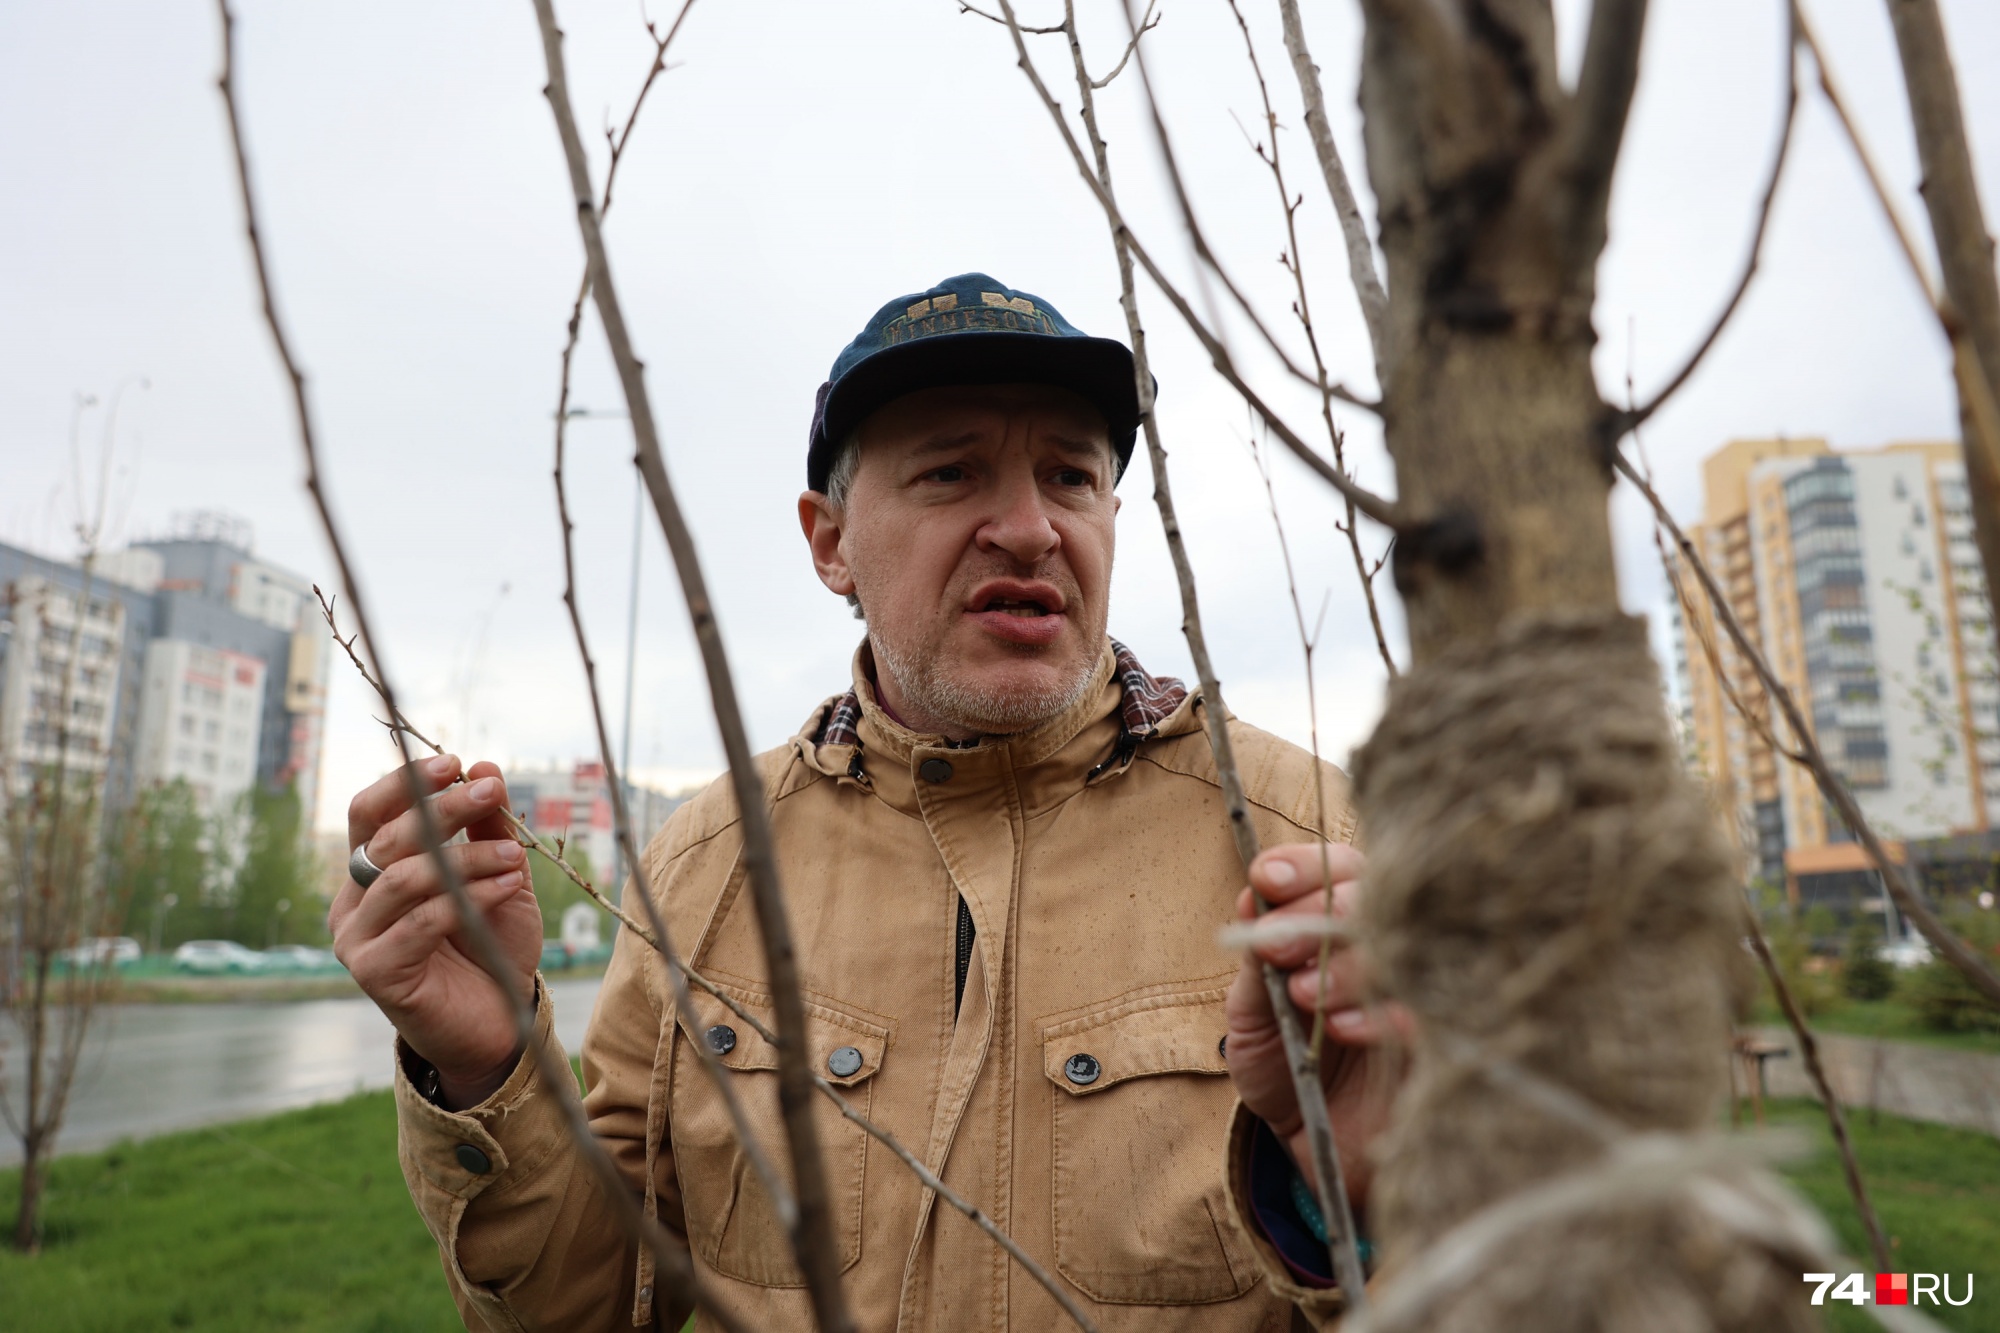 Биолог Павел Попков считает, что деревья усохли, потому что их плохо поливали осенью